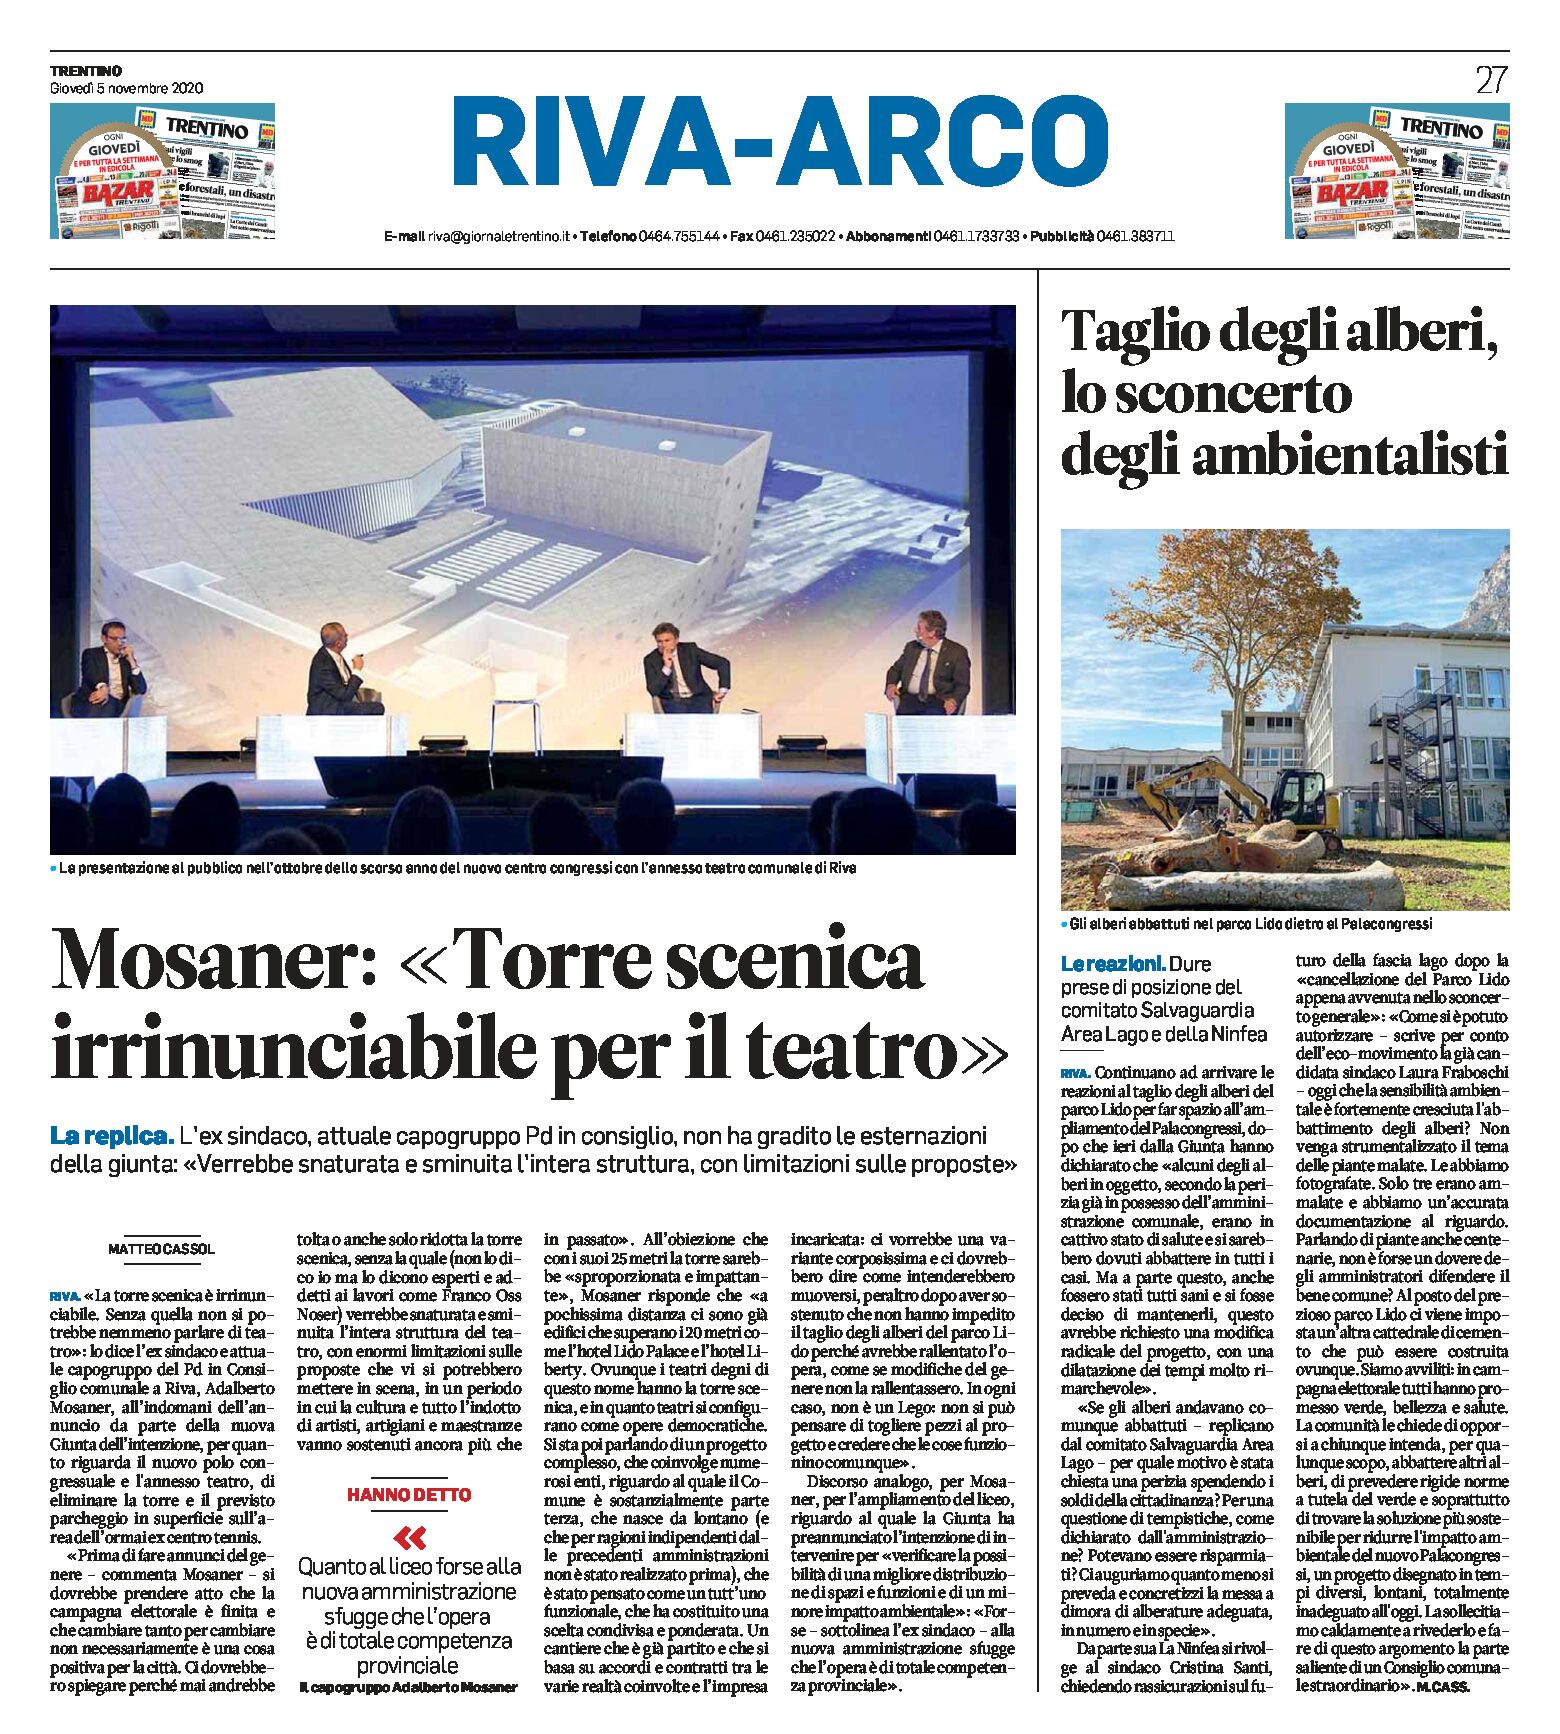 Riva: Mosaner “torre scenica irrinunciabile per il teatro”. Taglio degli alberi, sconcerto degli ambientalisti